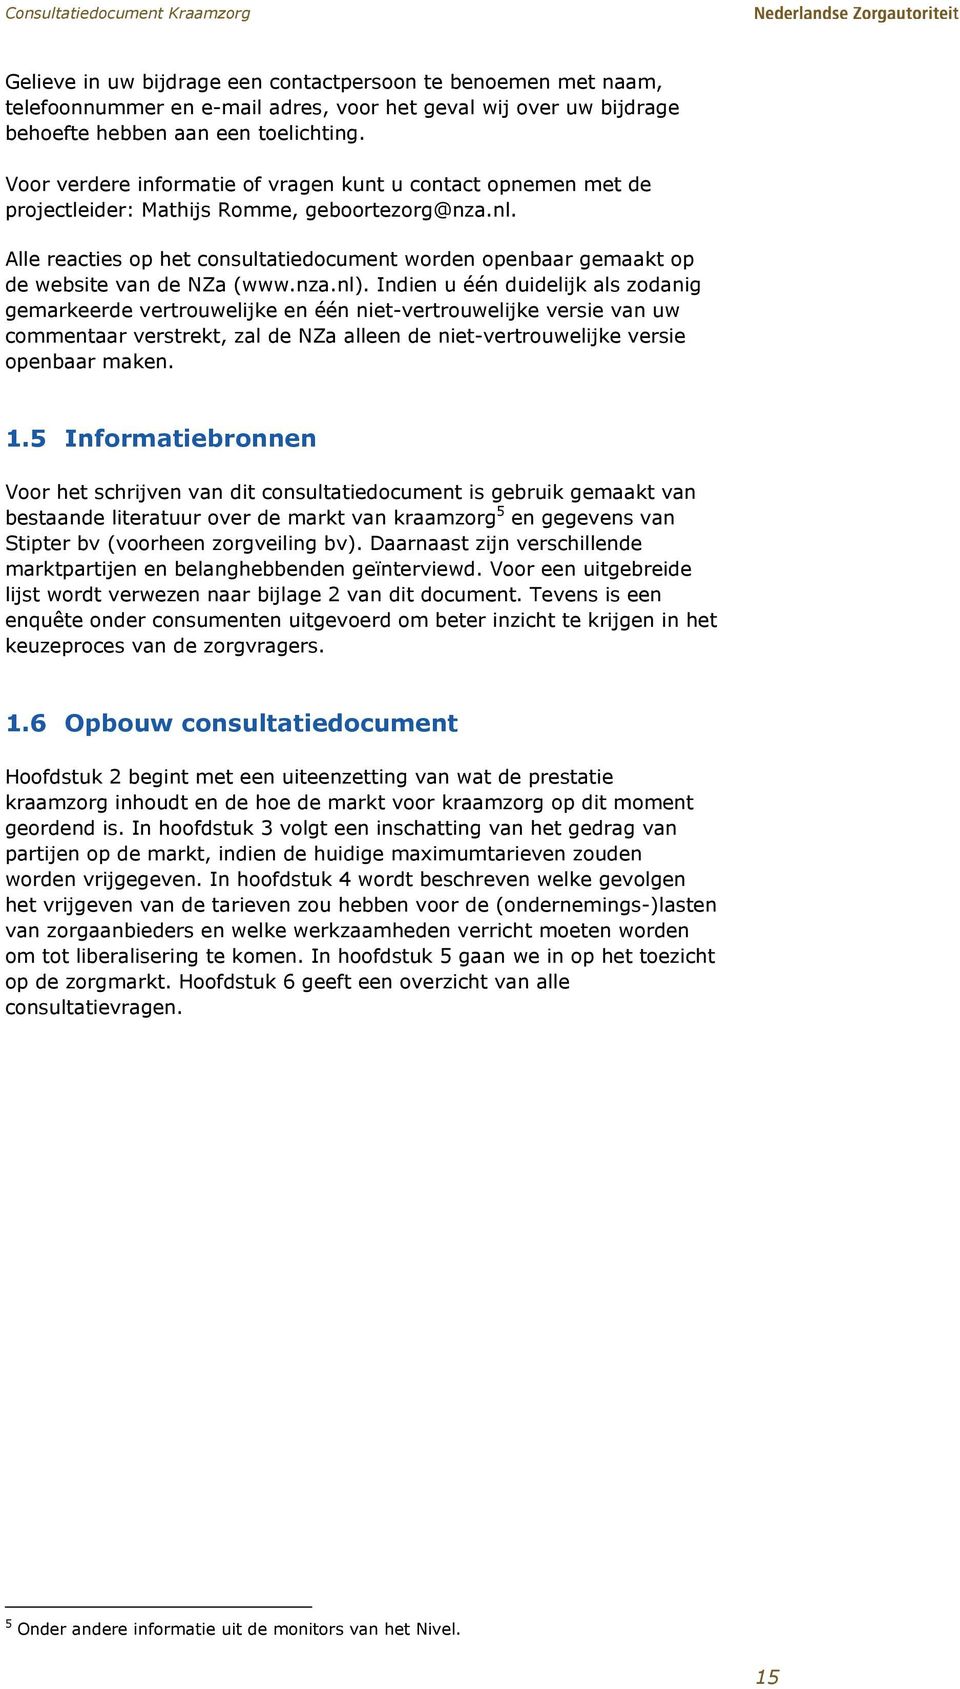 Alle reacties op het consultatiedocument worden openbaar gemaakt op de website van de NZa (www.nza.nl).